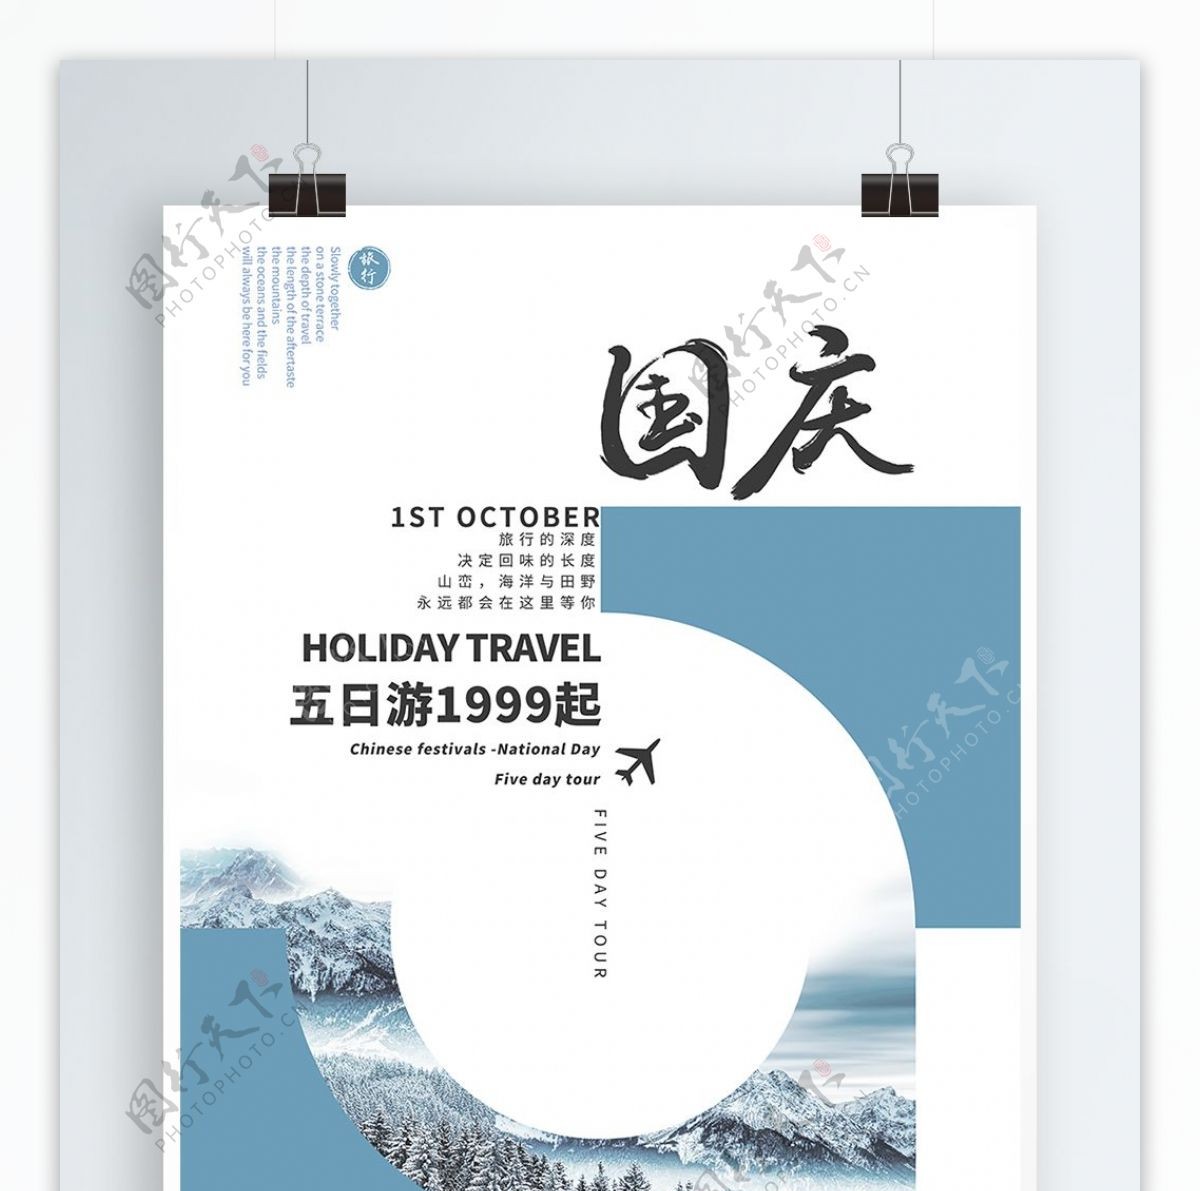 简约大气版式创意中国风文艺国庆节旅游海报